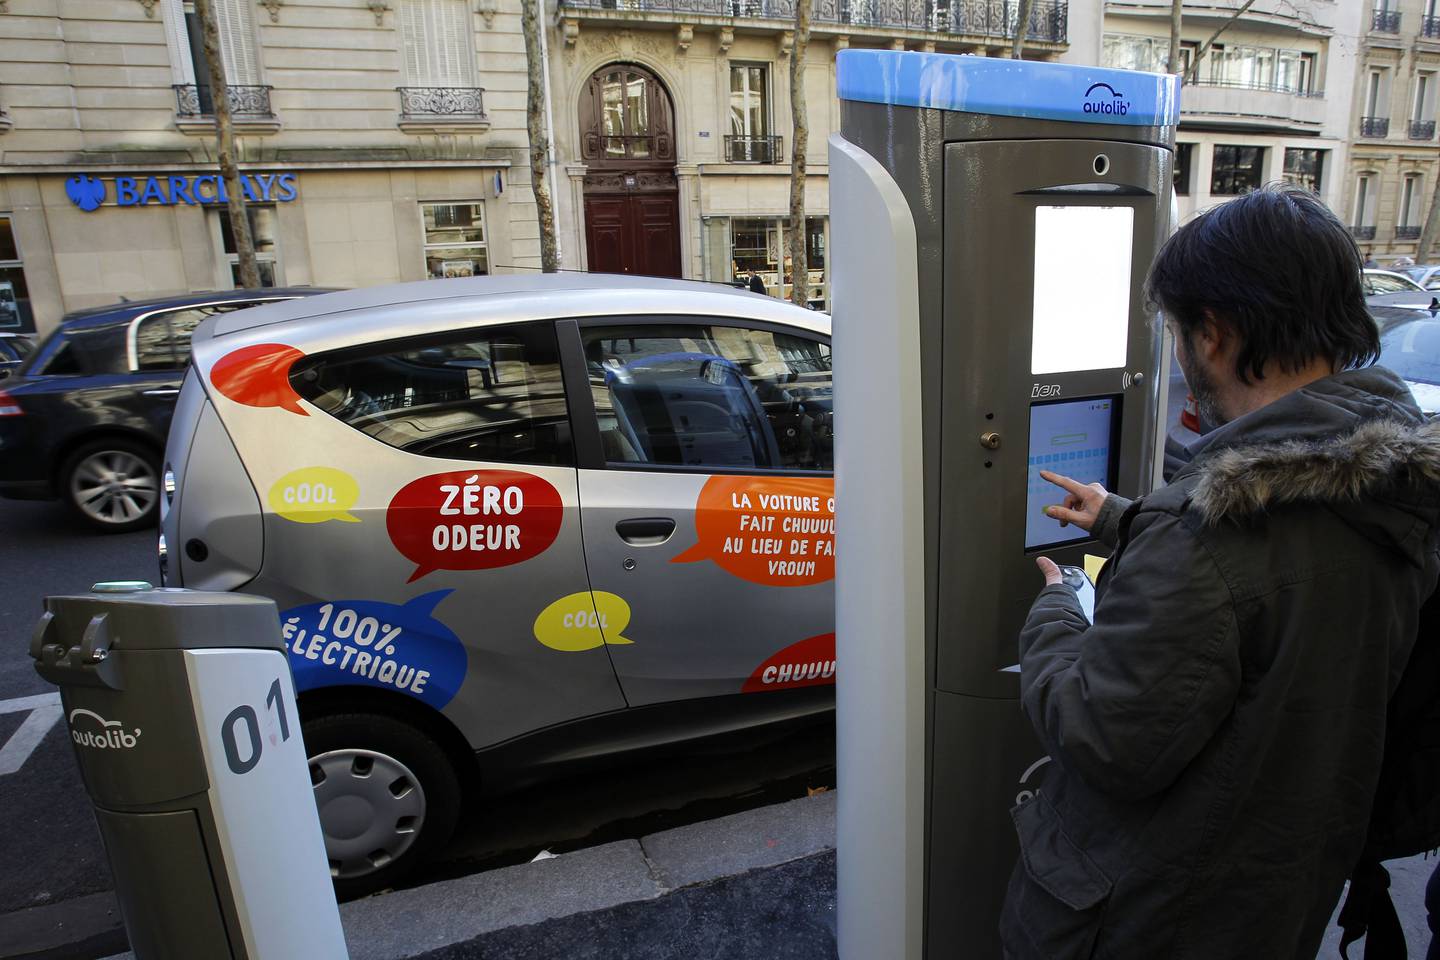 Frankrike har alene om lag 120.000 ladepunkter nå, Ifølge ny rapport. Bildet viser en ladestasjon ved en parkeringsplass forbeholdt elektriske bildelingsbiler i Paris.